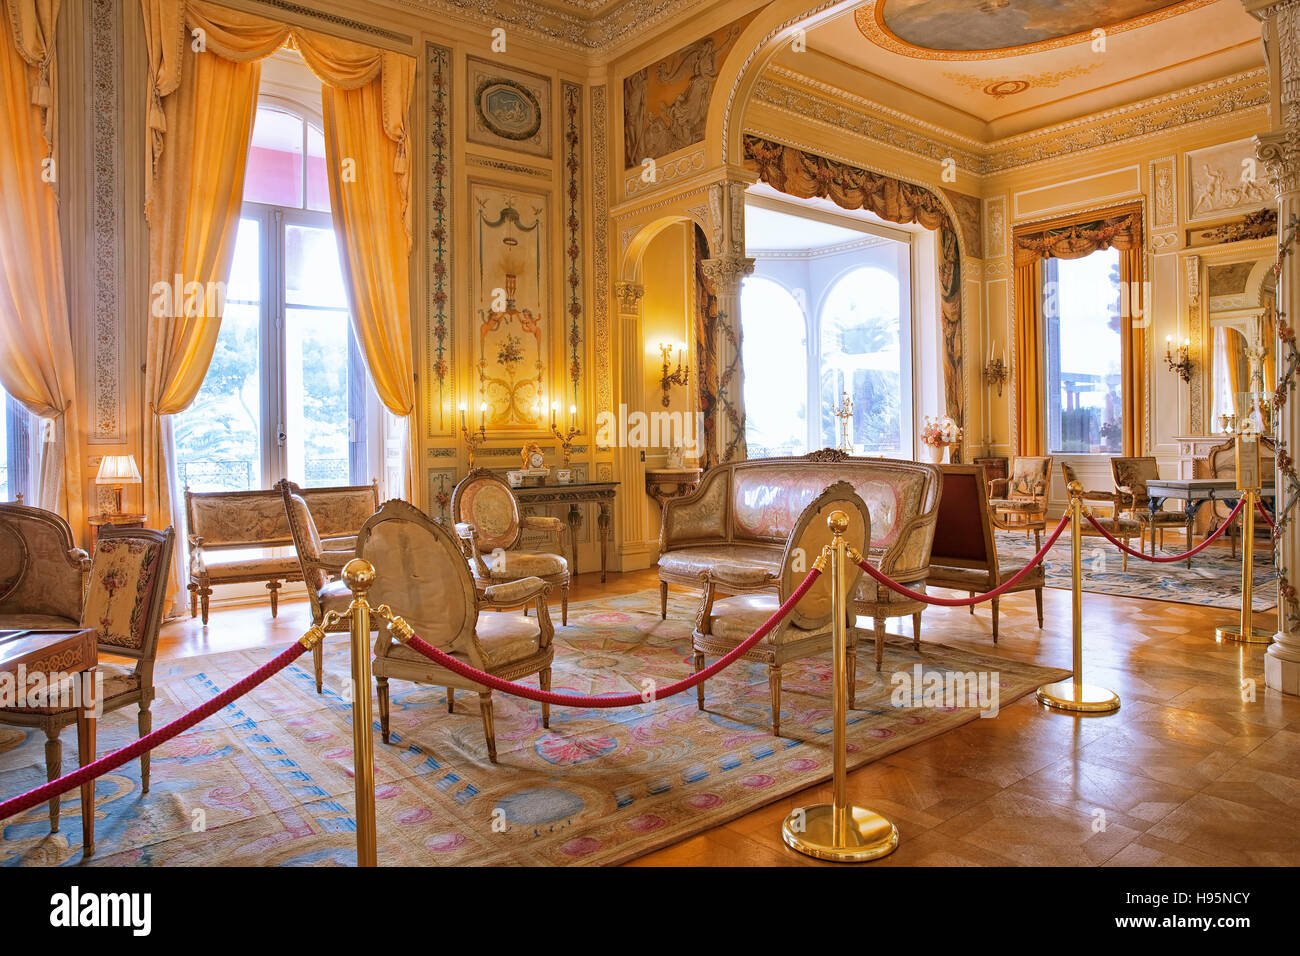 Interieur der Villa Ephrussi de Rothschild in St. Jean Cap Ferrat, Frankreich Stockfoto